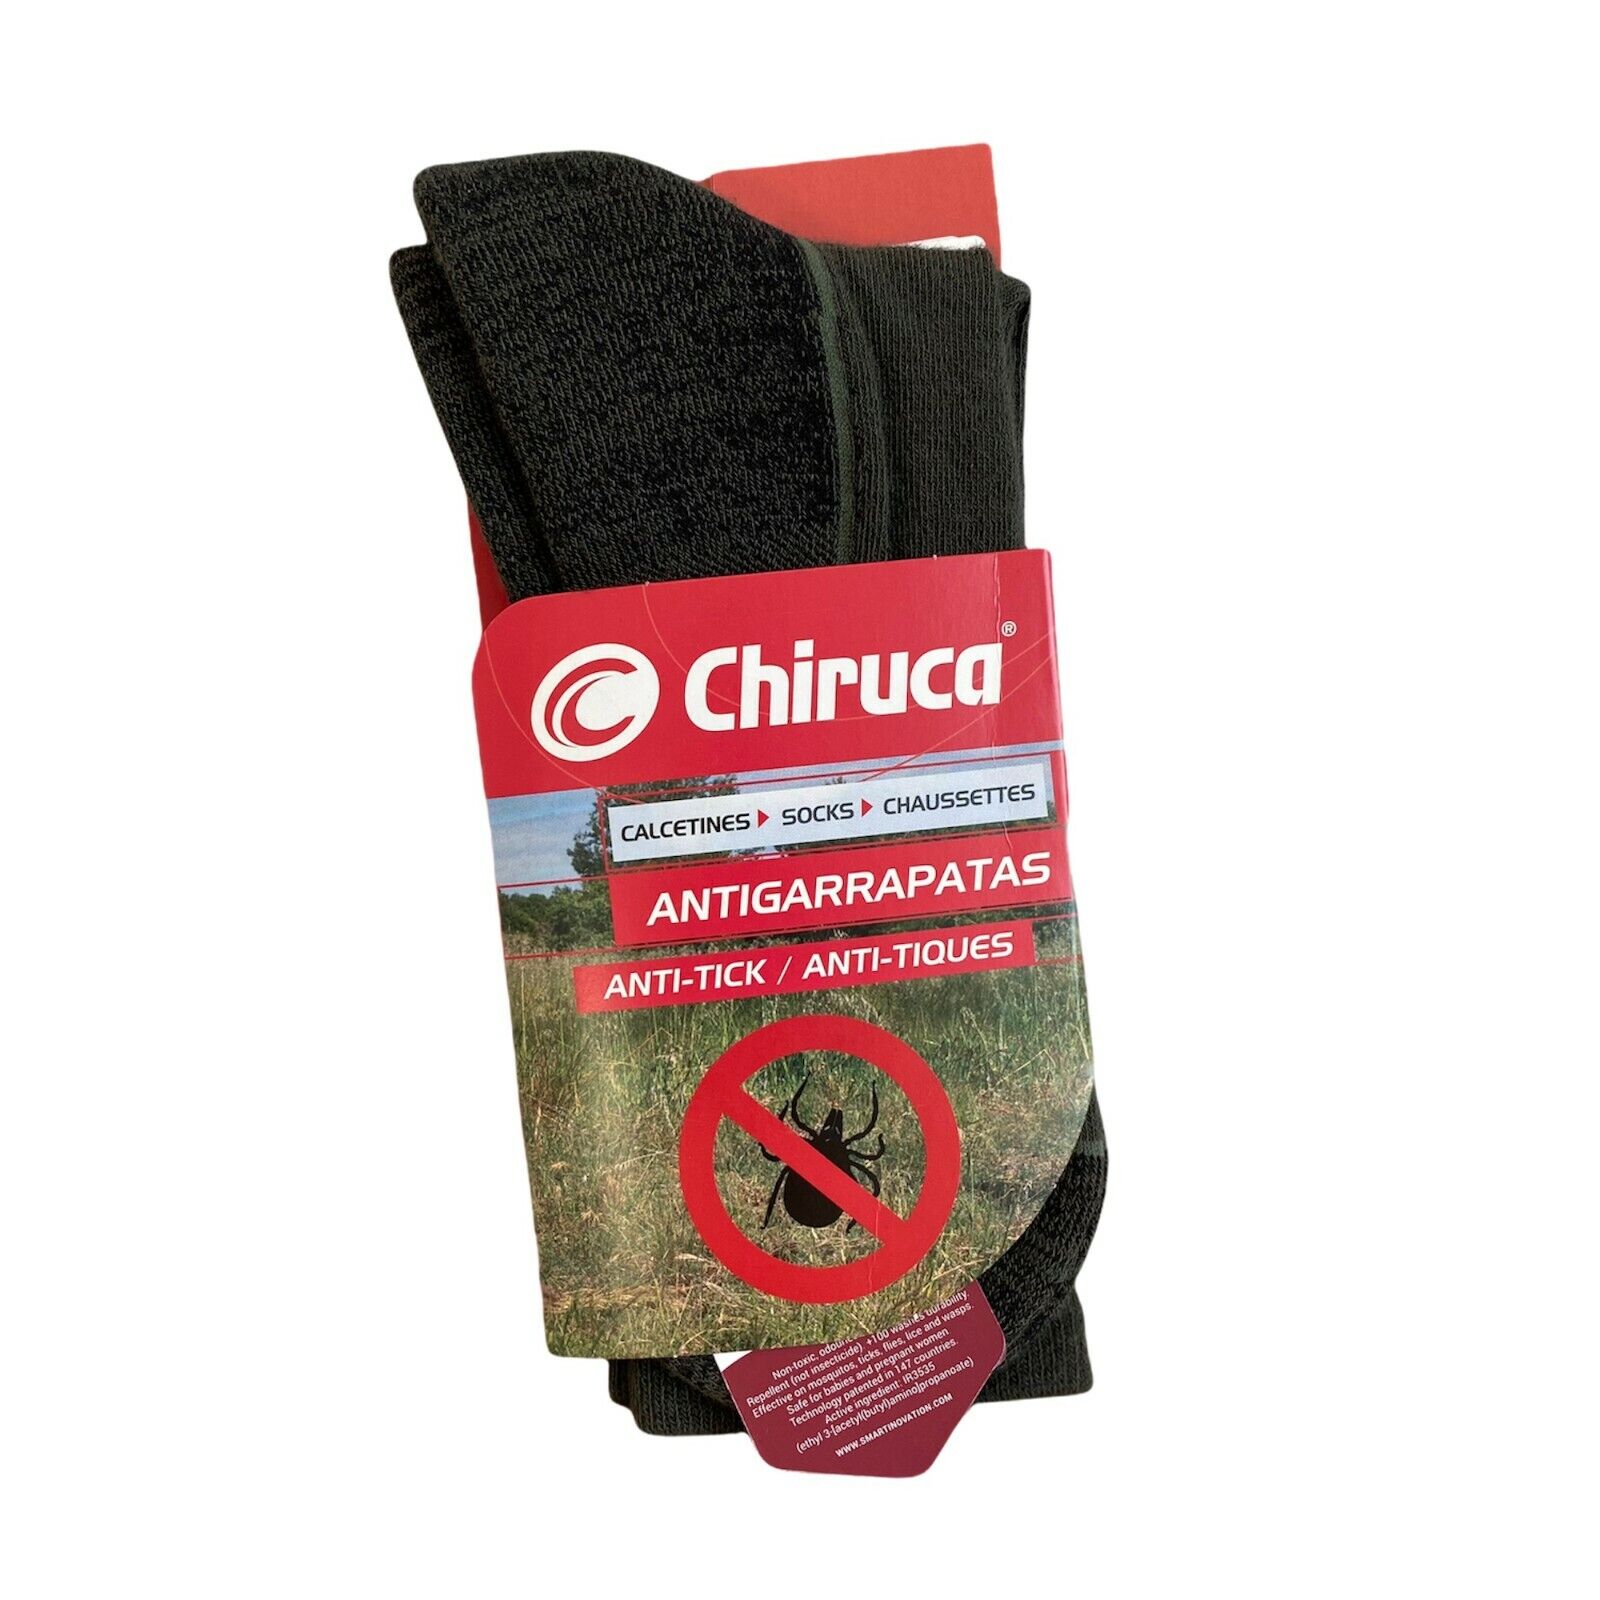 Chiruca Calce. Antigarrapatas Hunting Socks anti-tick New | eBay